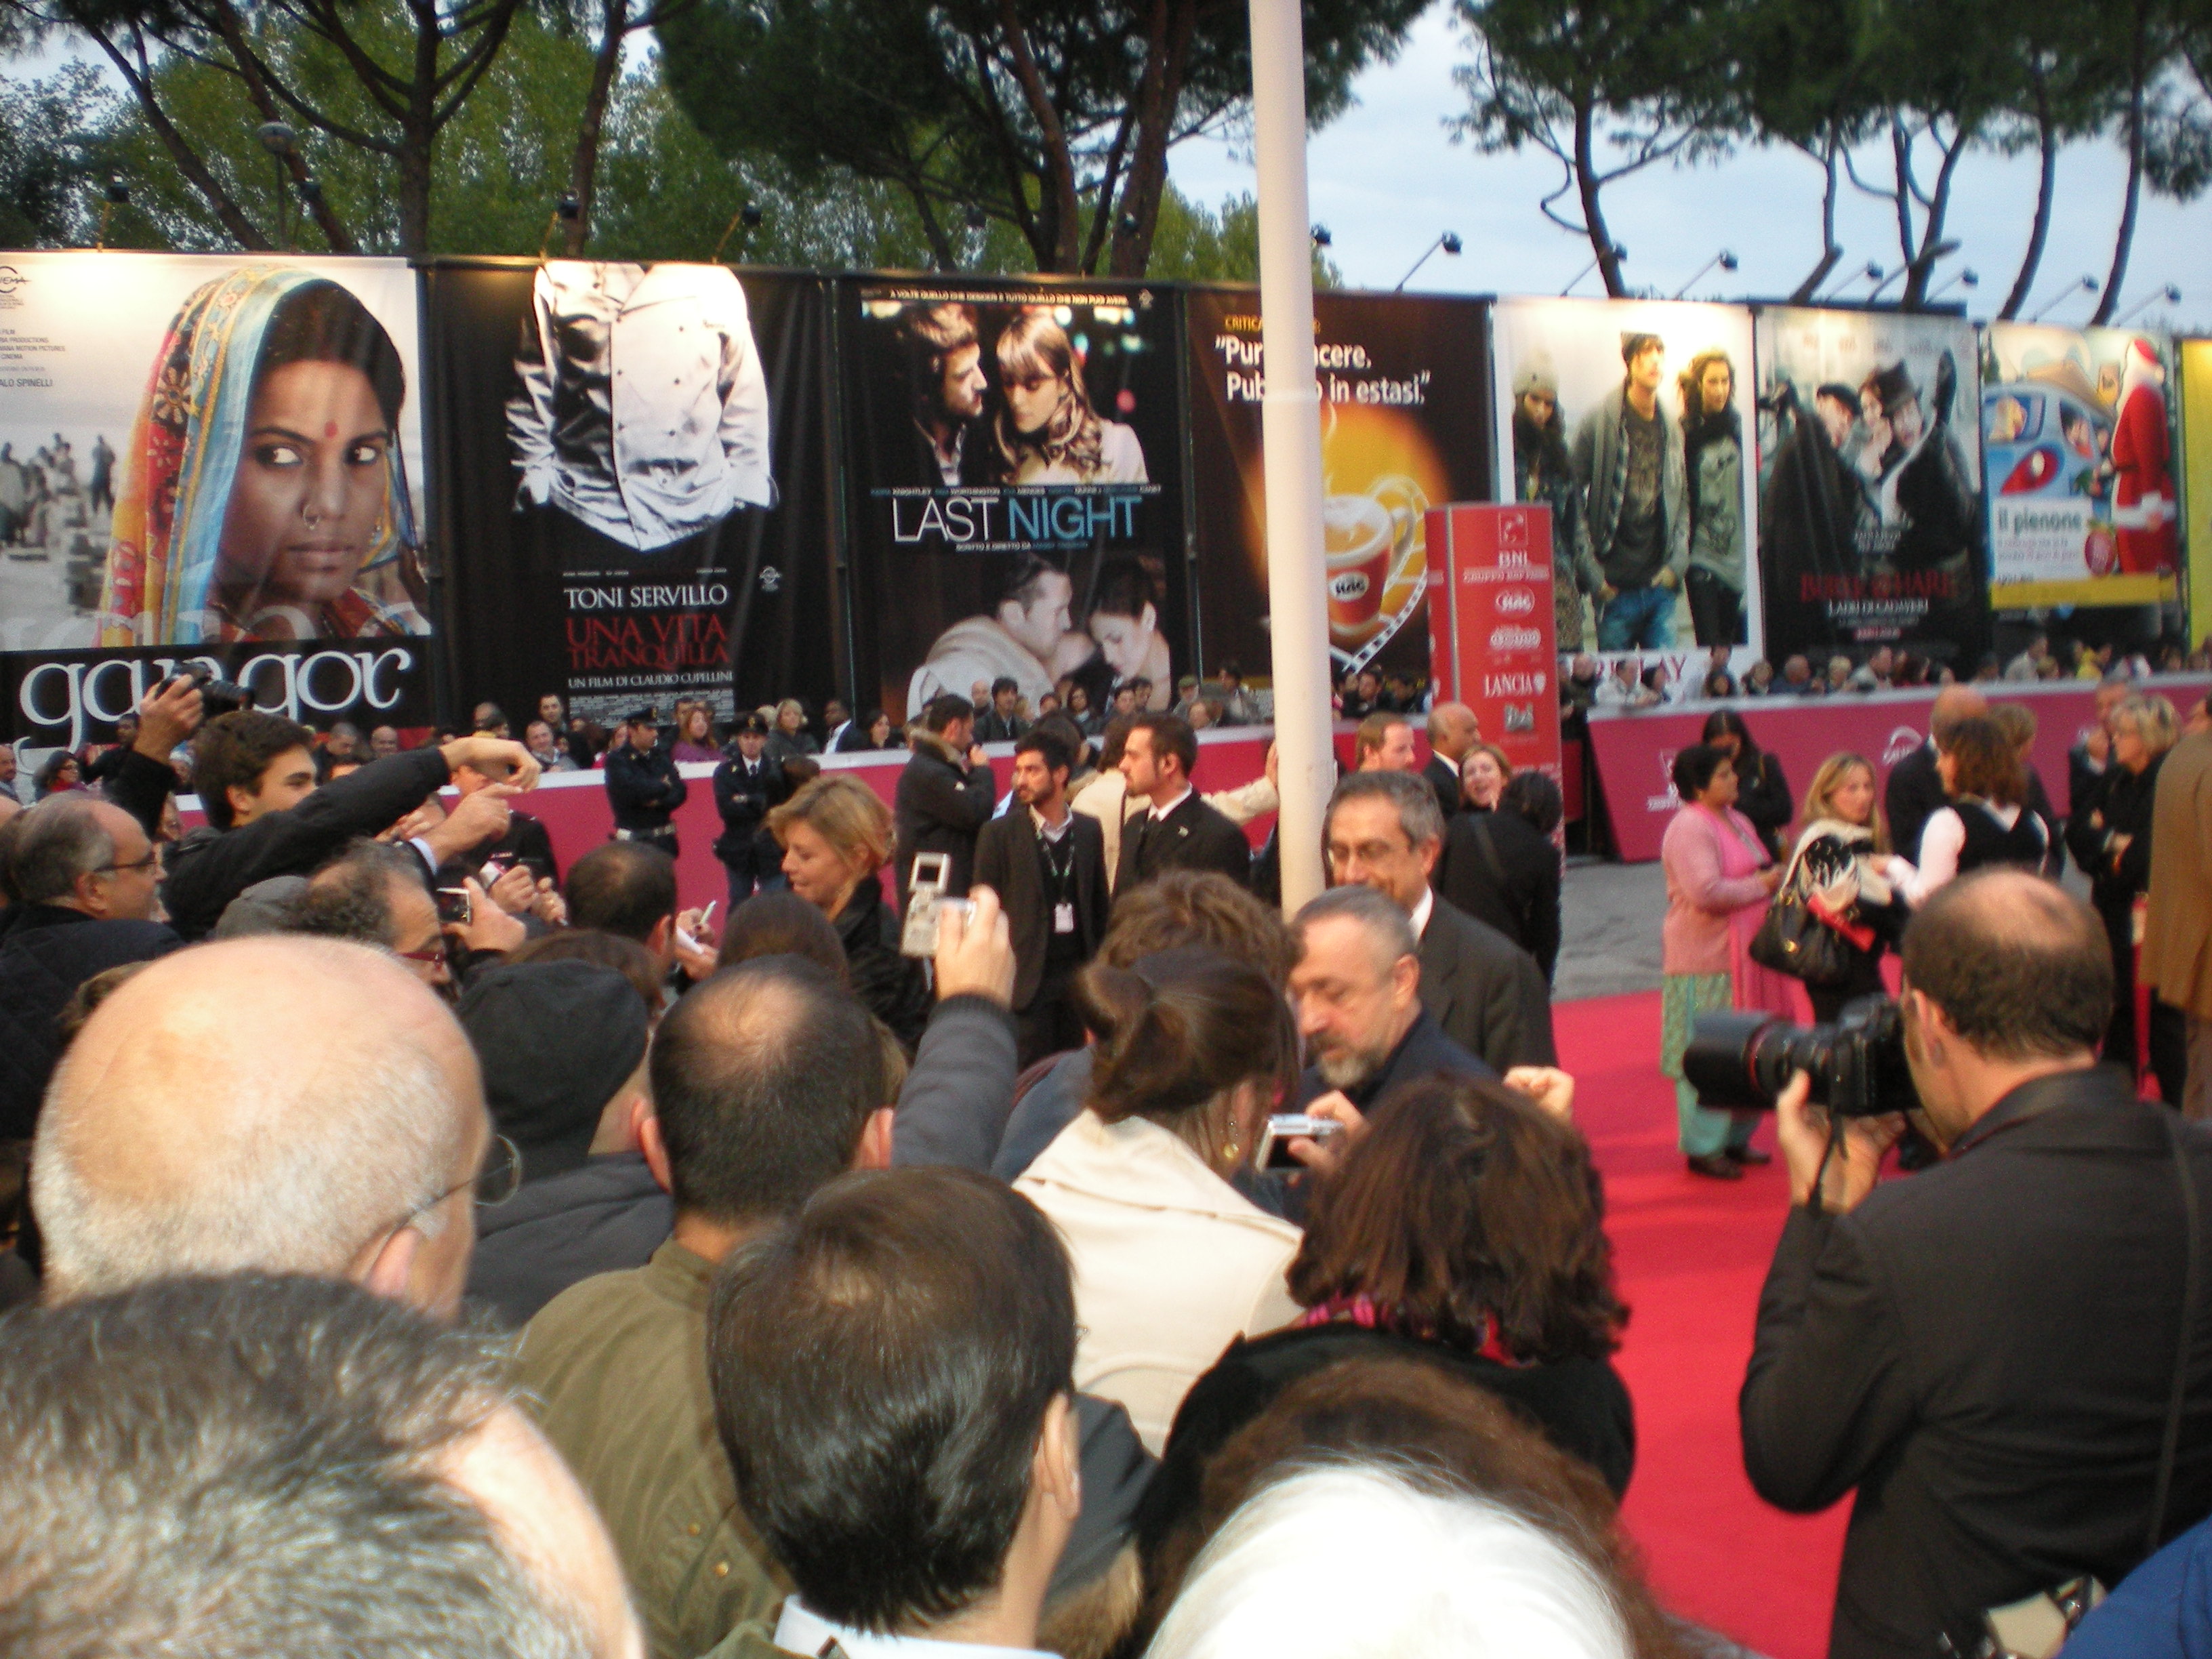 Rome Film Festival